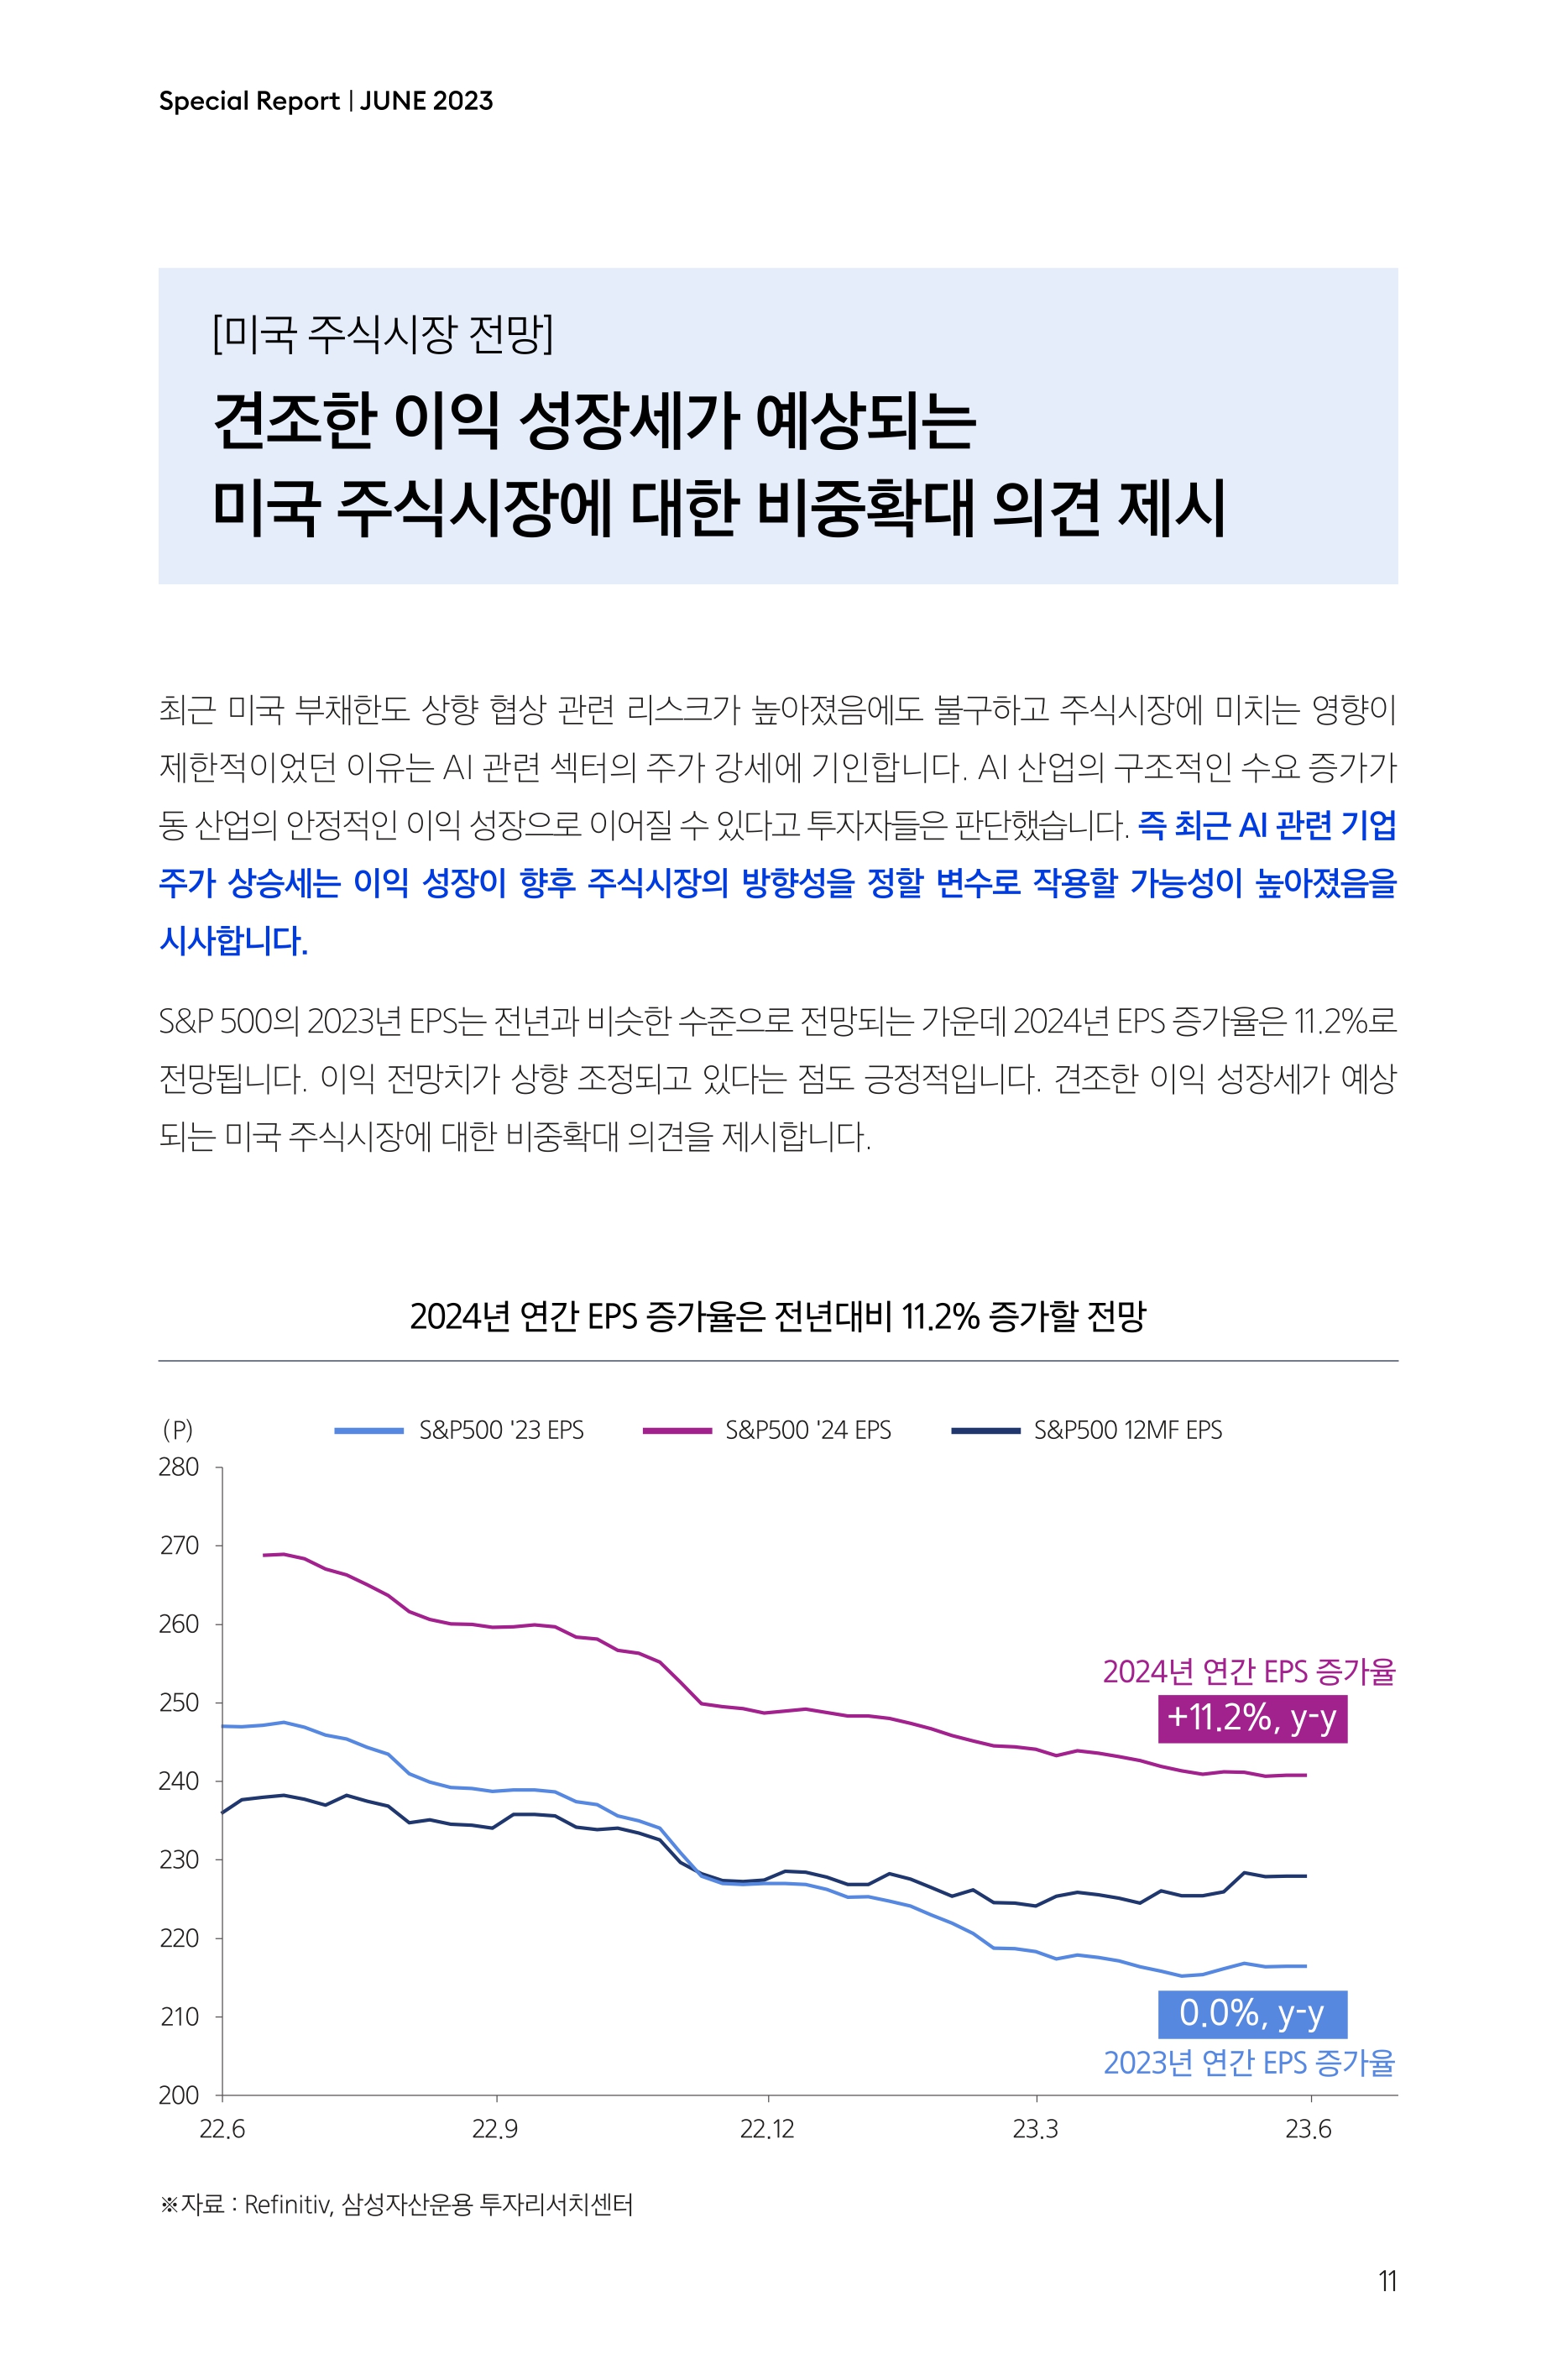 Samsung Global Market Outlook(낱장)_202306_page-0011.jpg